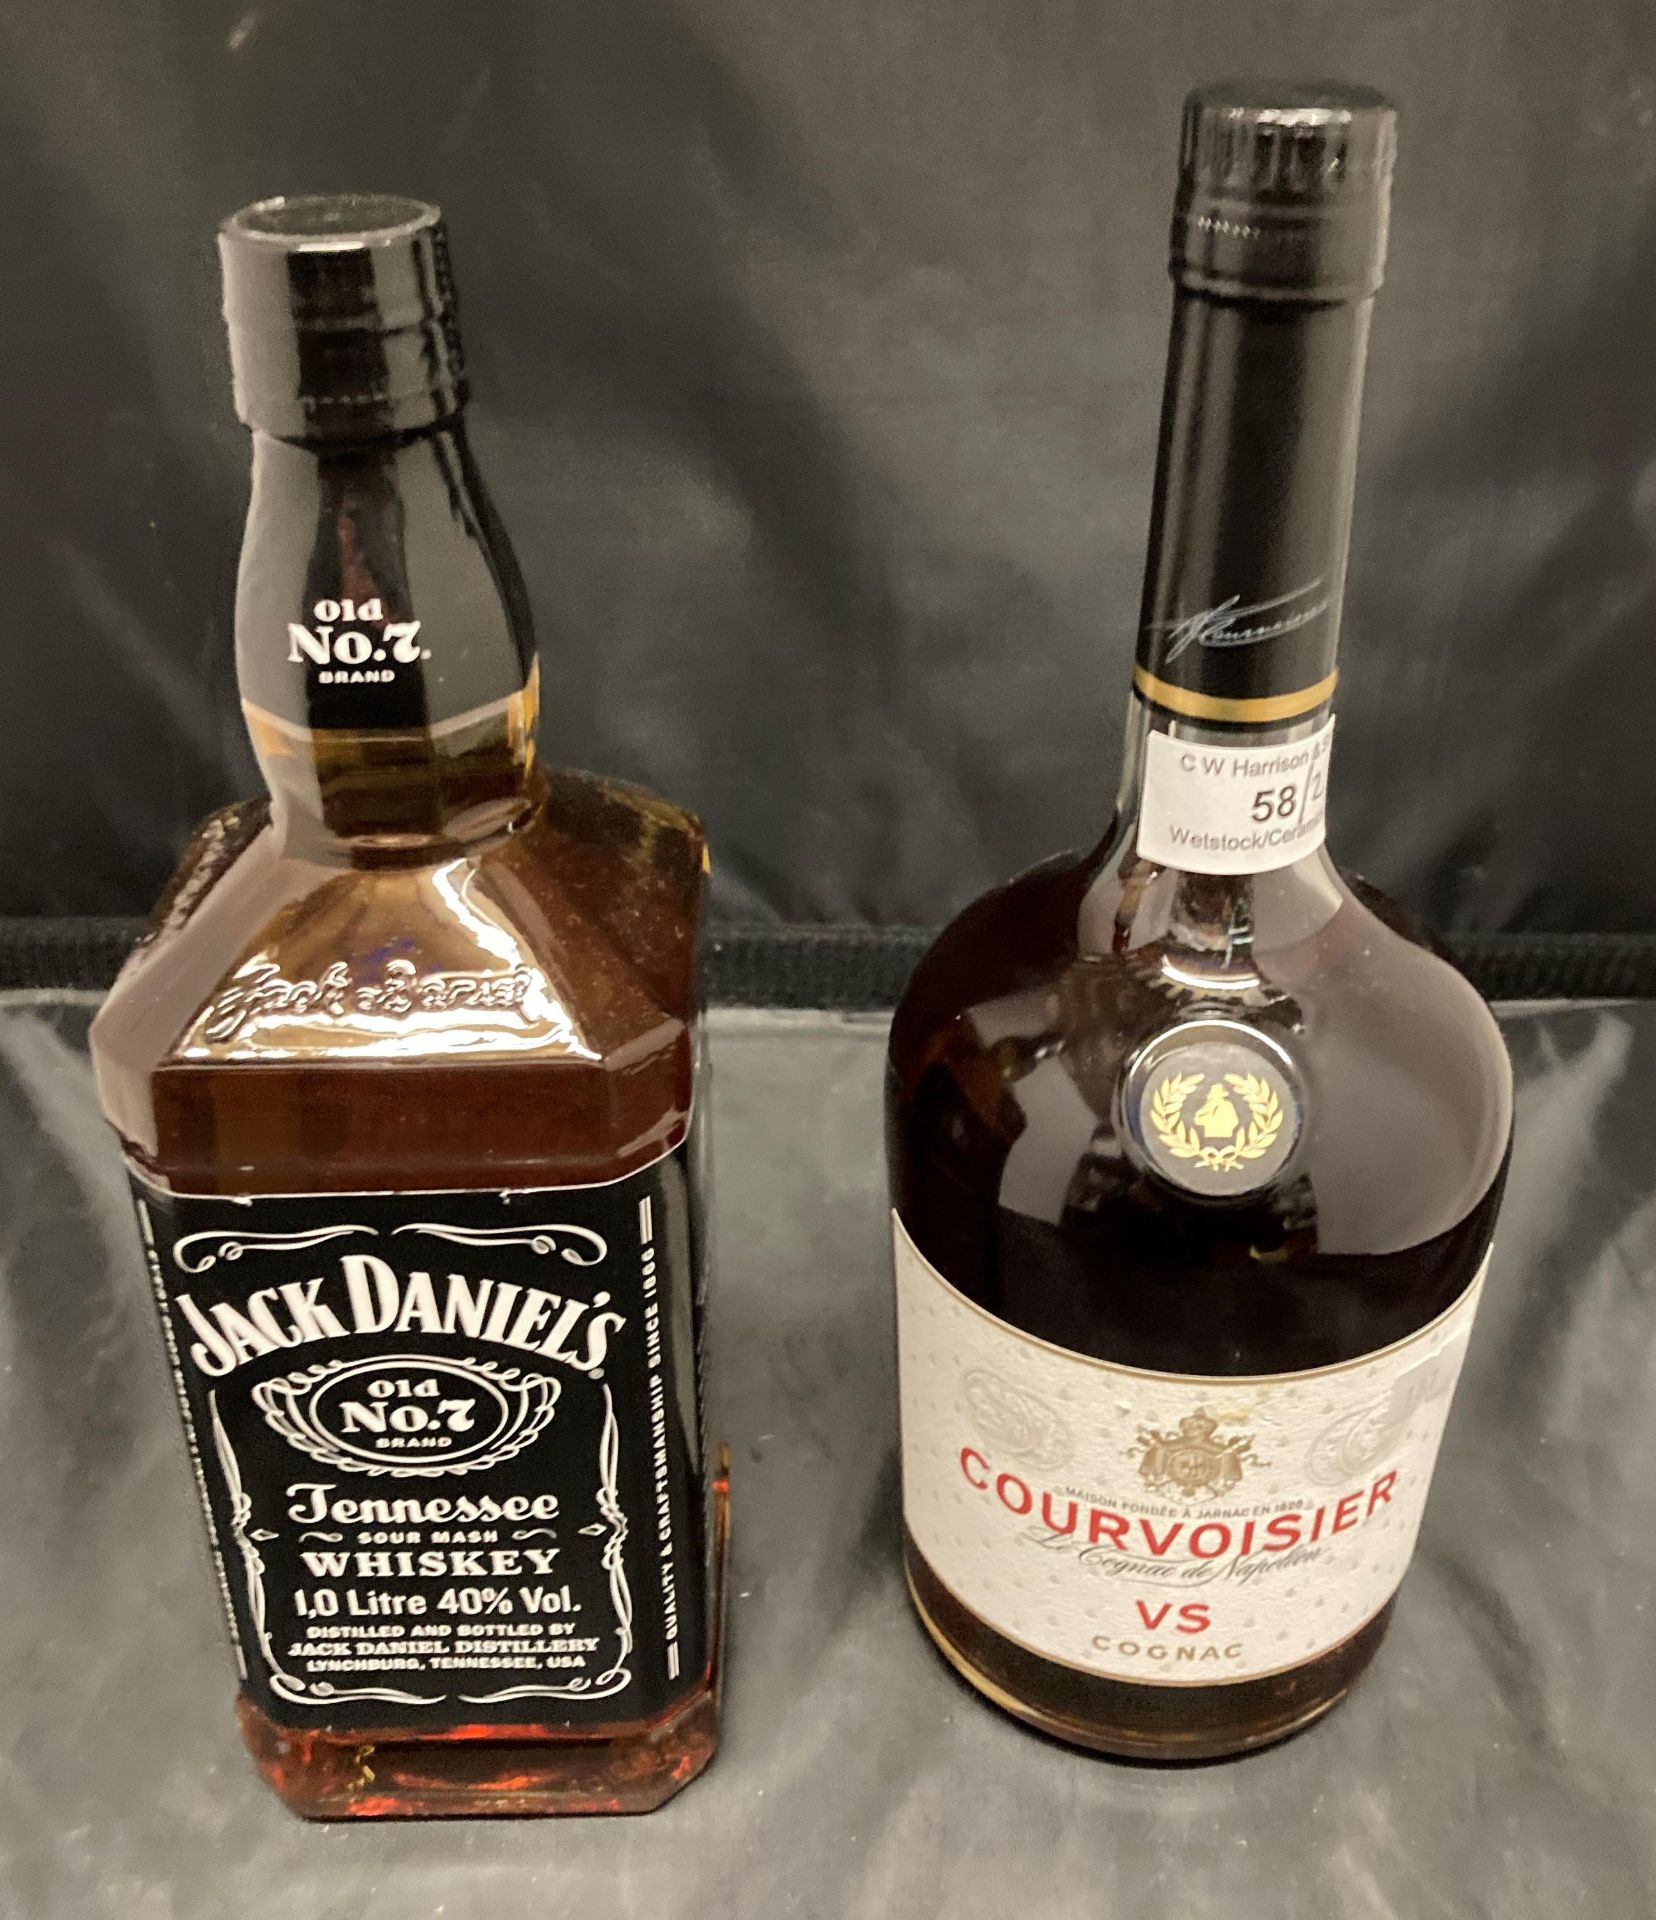 A one litre bottle of Courvoisier Cognac 40% volume and a one litre bottle of Jack Daniels Old No 7